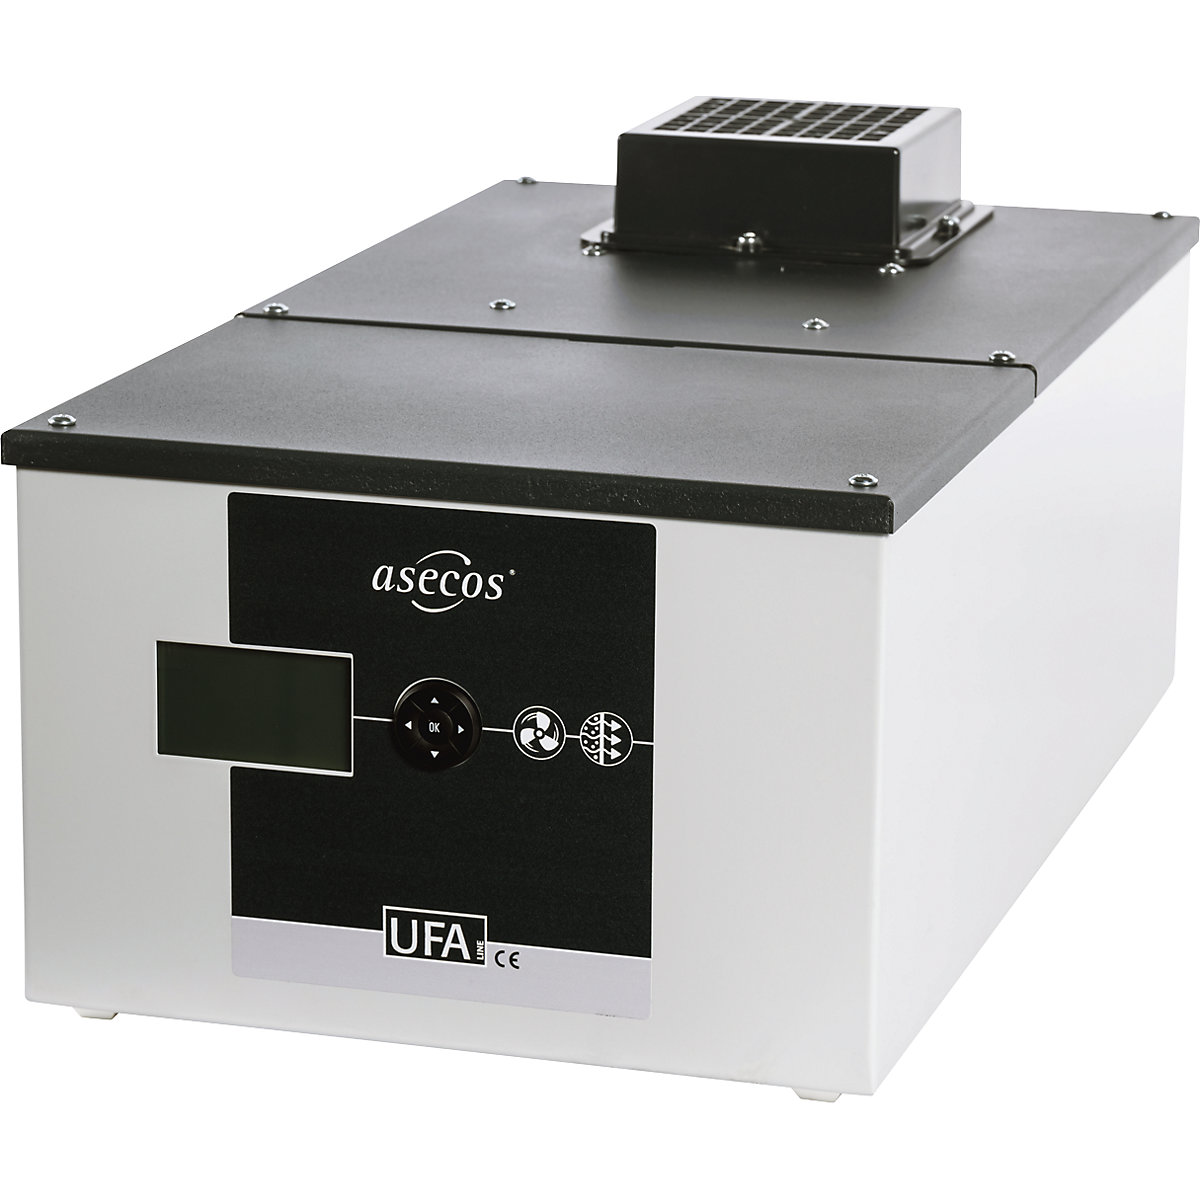 Caja-filtro de recirculación de aire - asecos